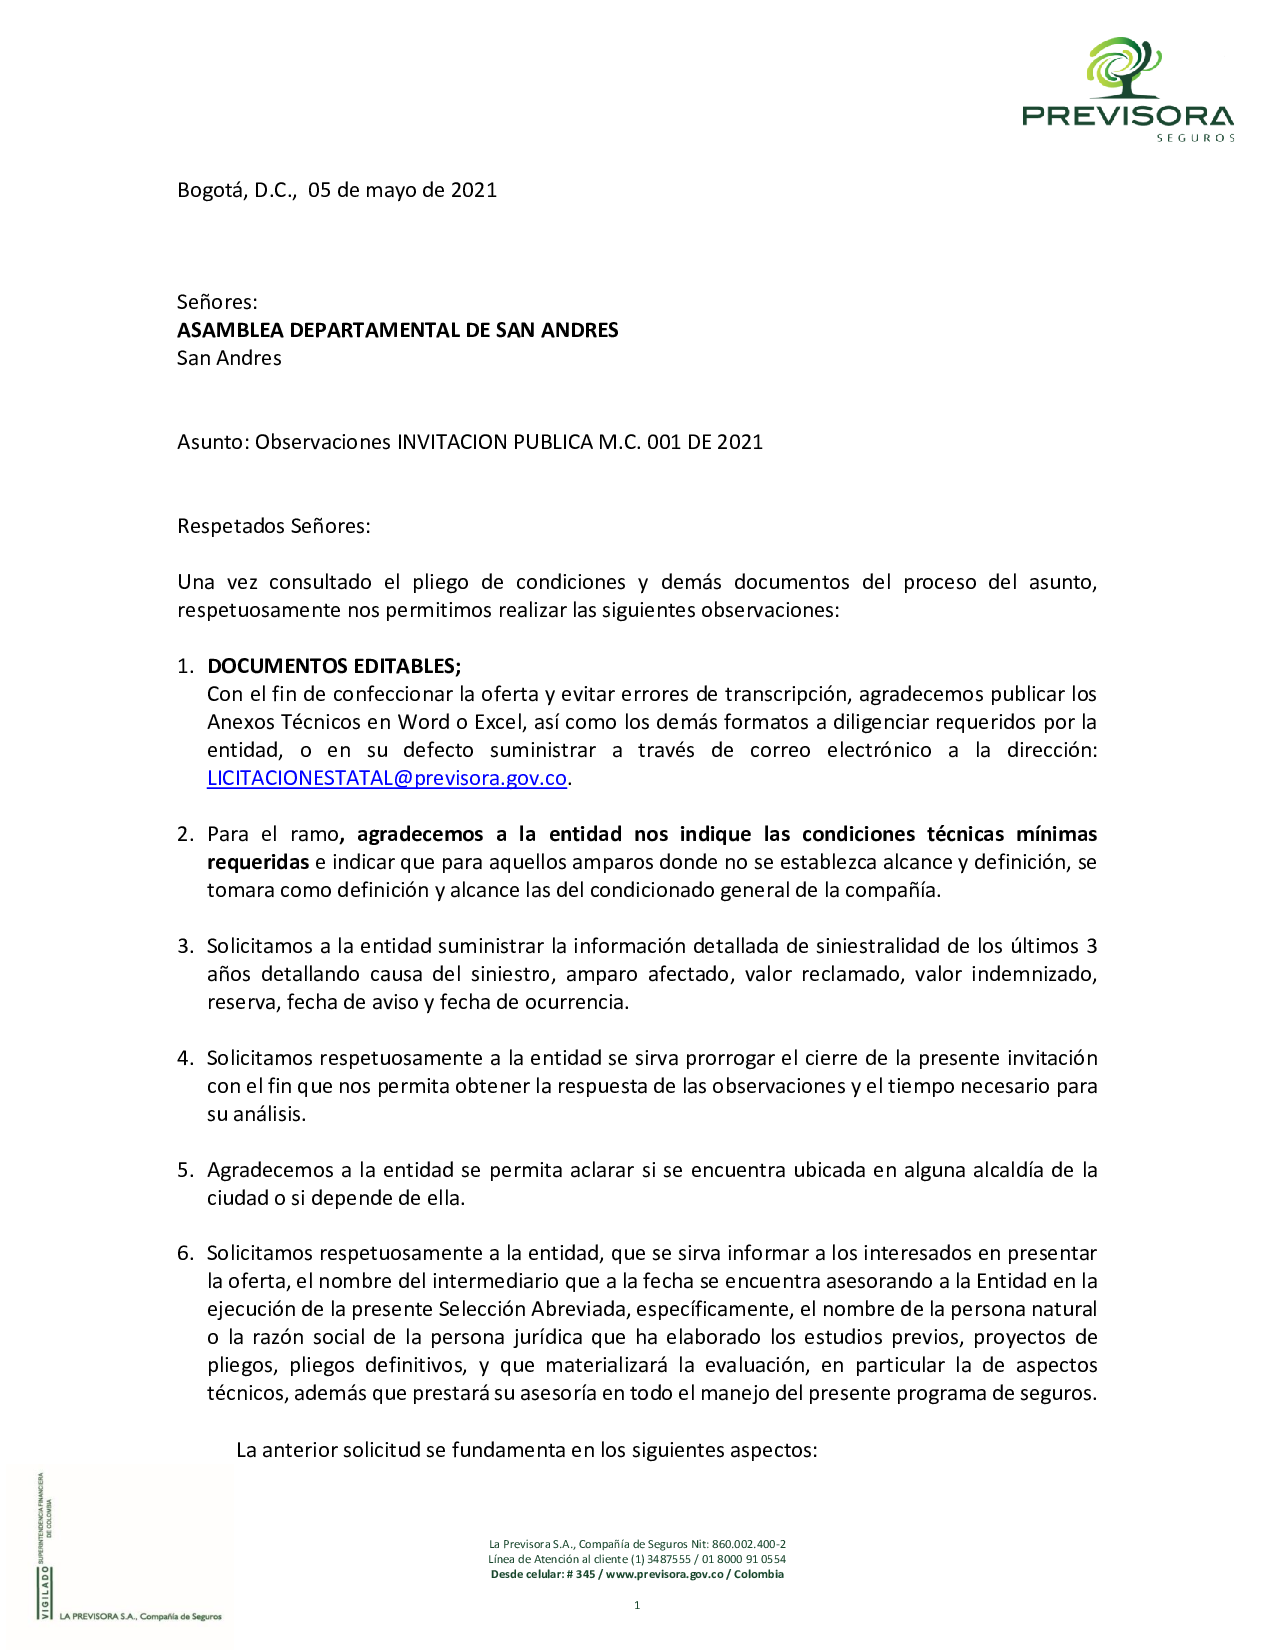 Observaciones_Pliego__ASAMBLEA_DEPARTAMENTAL_DE_SAN_ANDRES.pdf